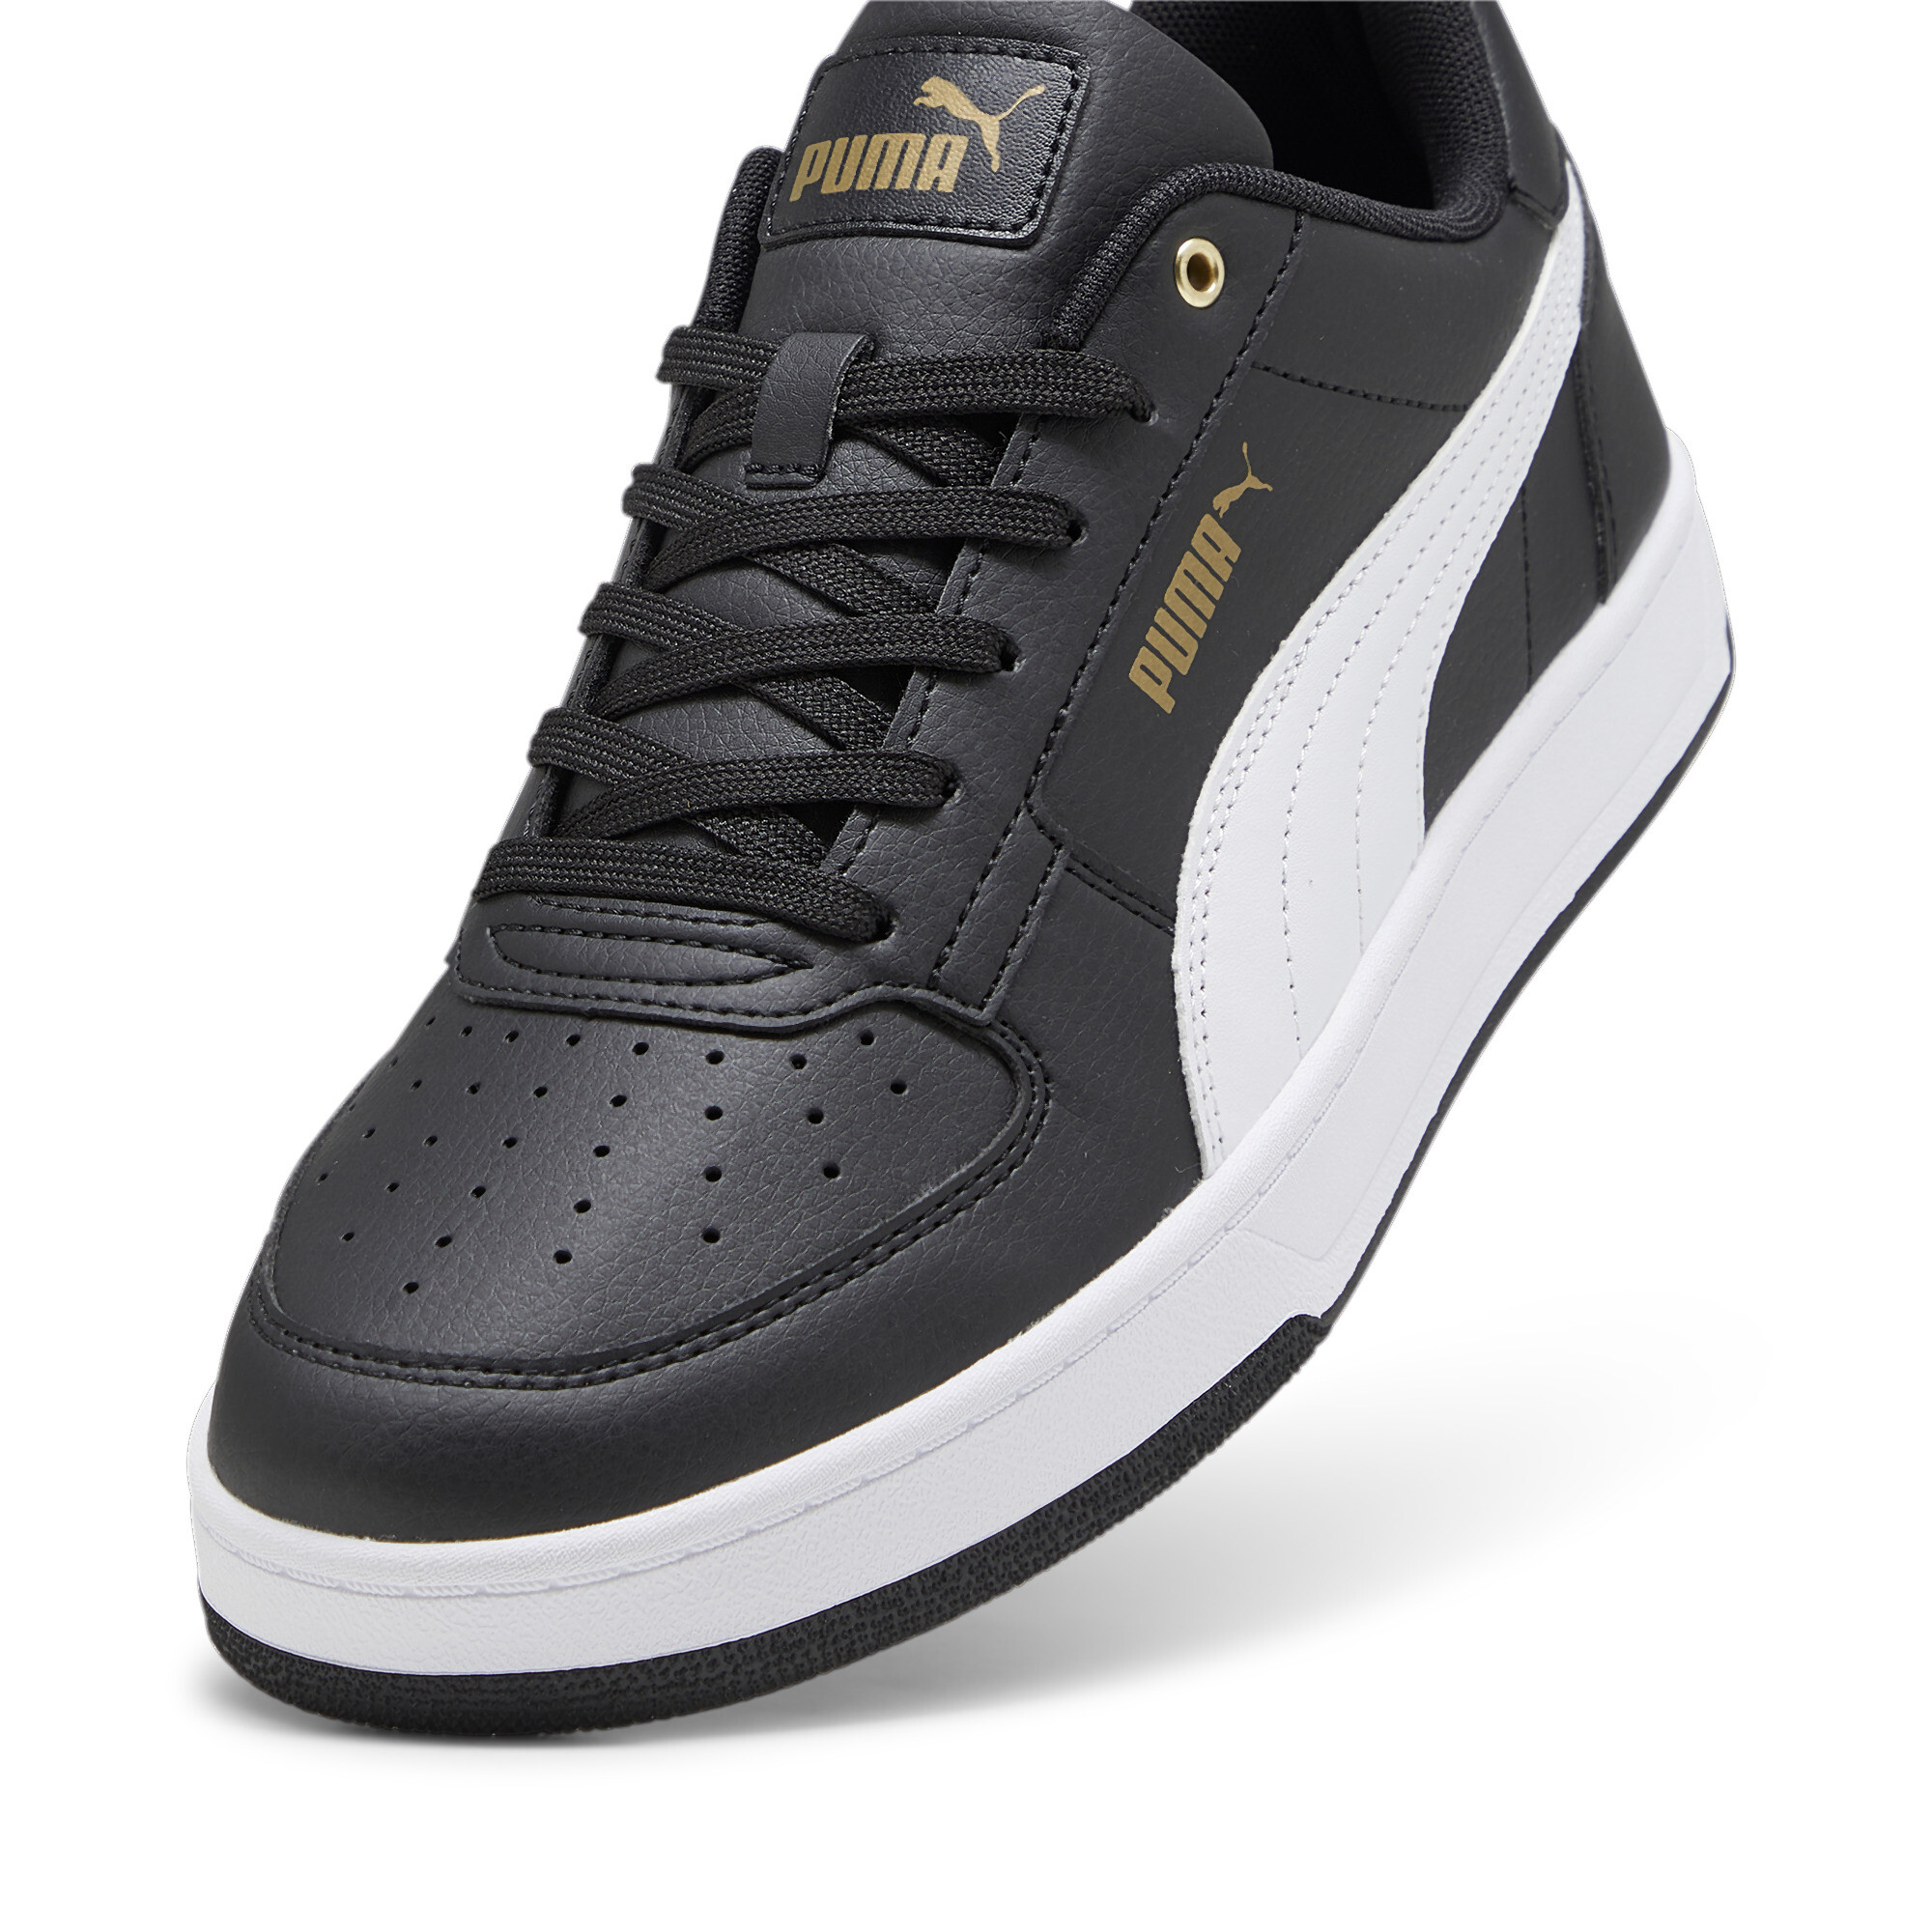 Men's PUMA Caven 2.0 Sneakers In Black/Gold, Size EU 48